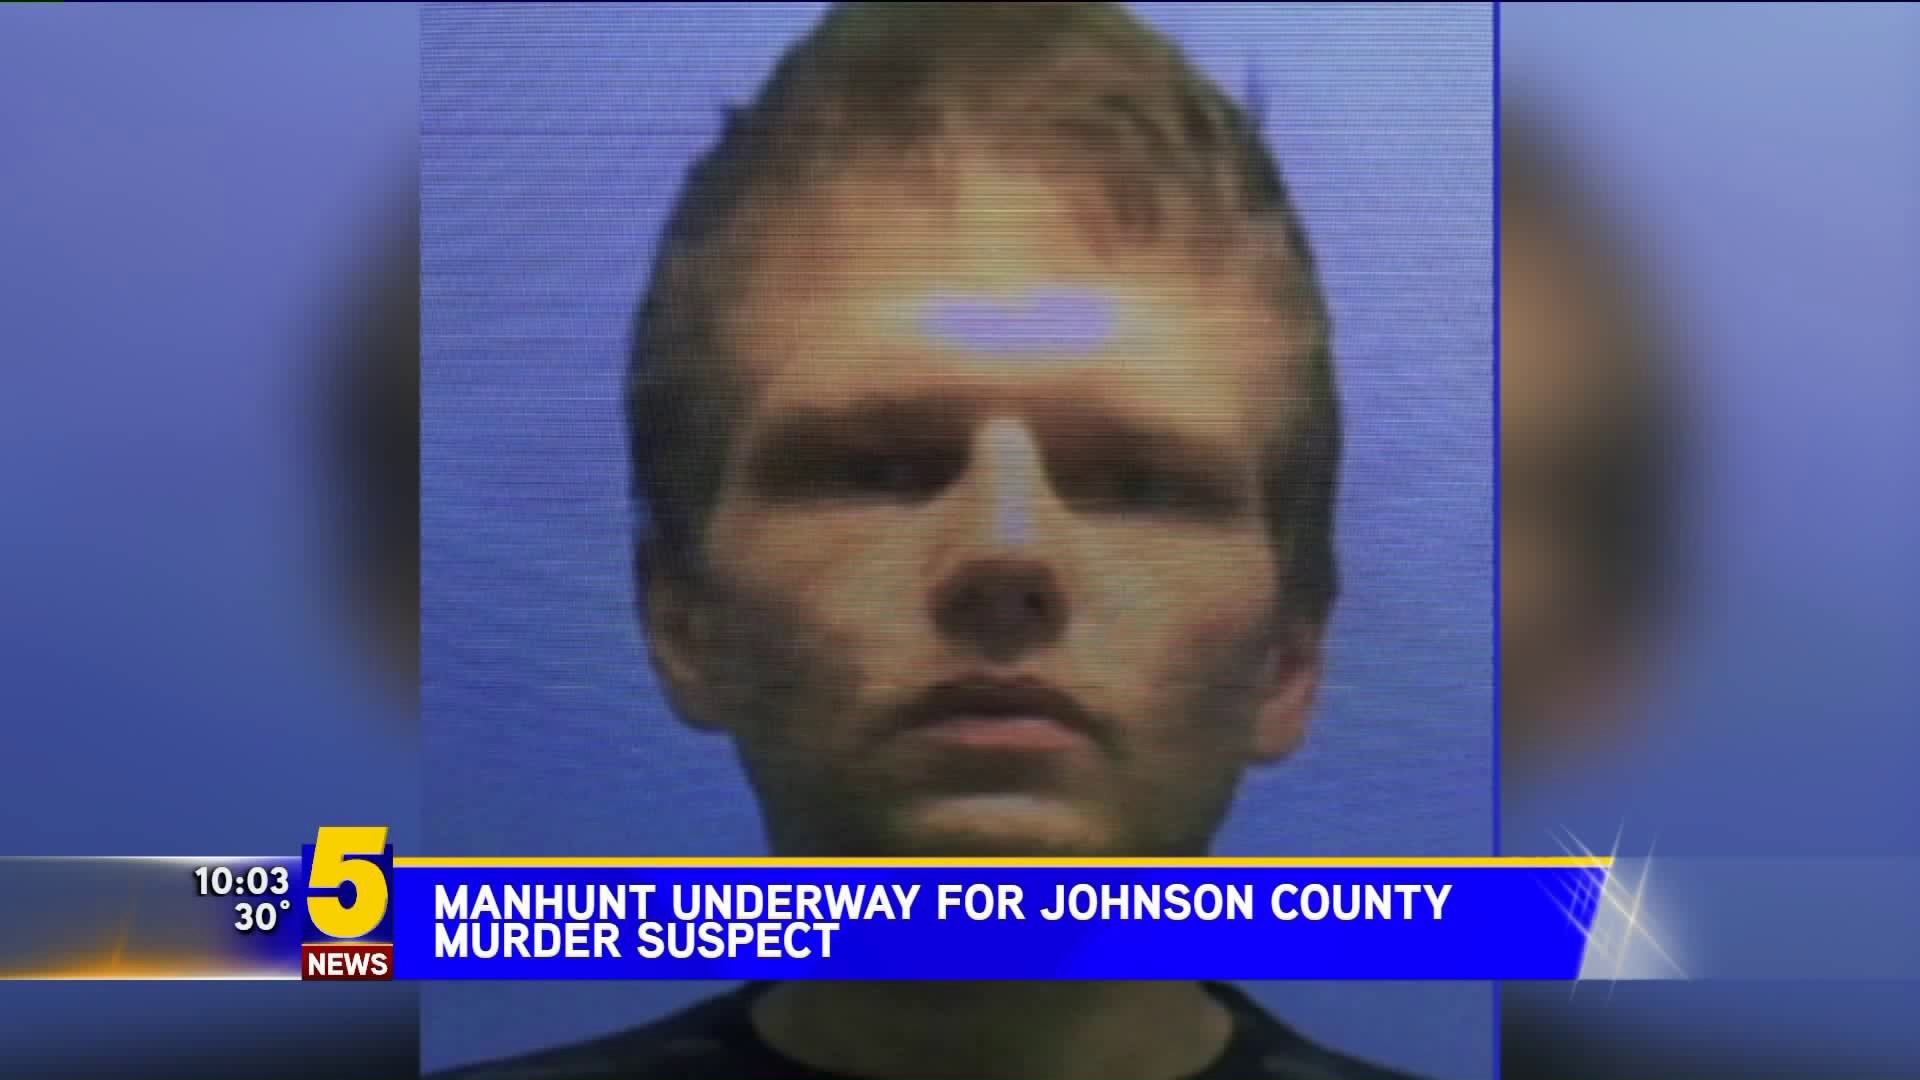 Manhunt Underway For Johnson County Murder Suspect